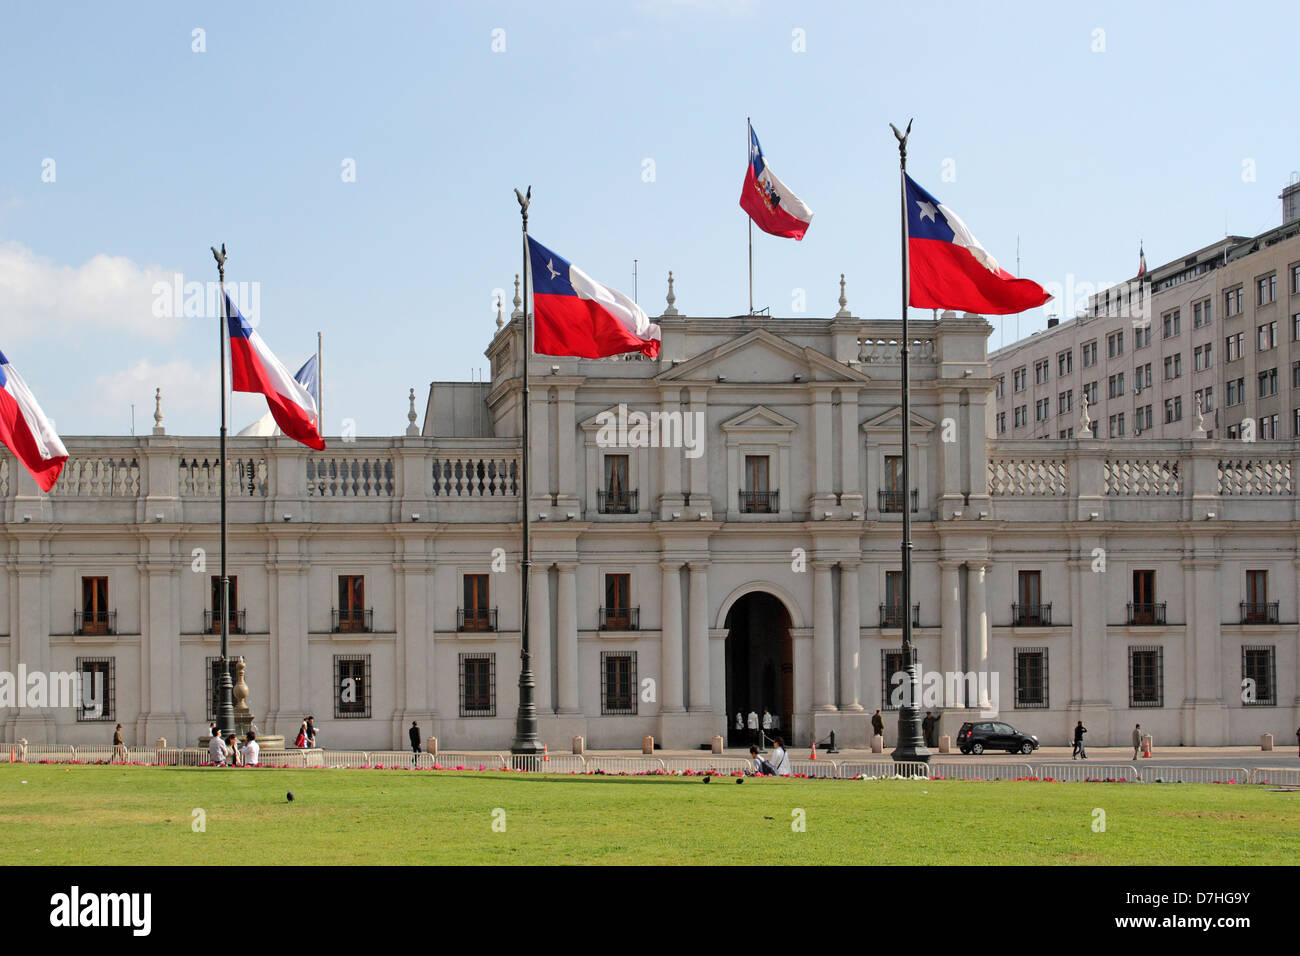 Santiago de Chile de La Moneda Government palace Stock Photo